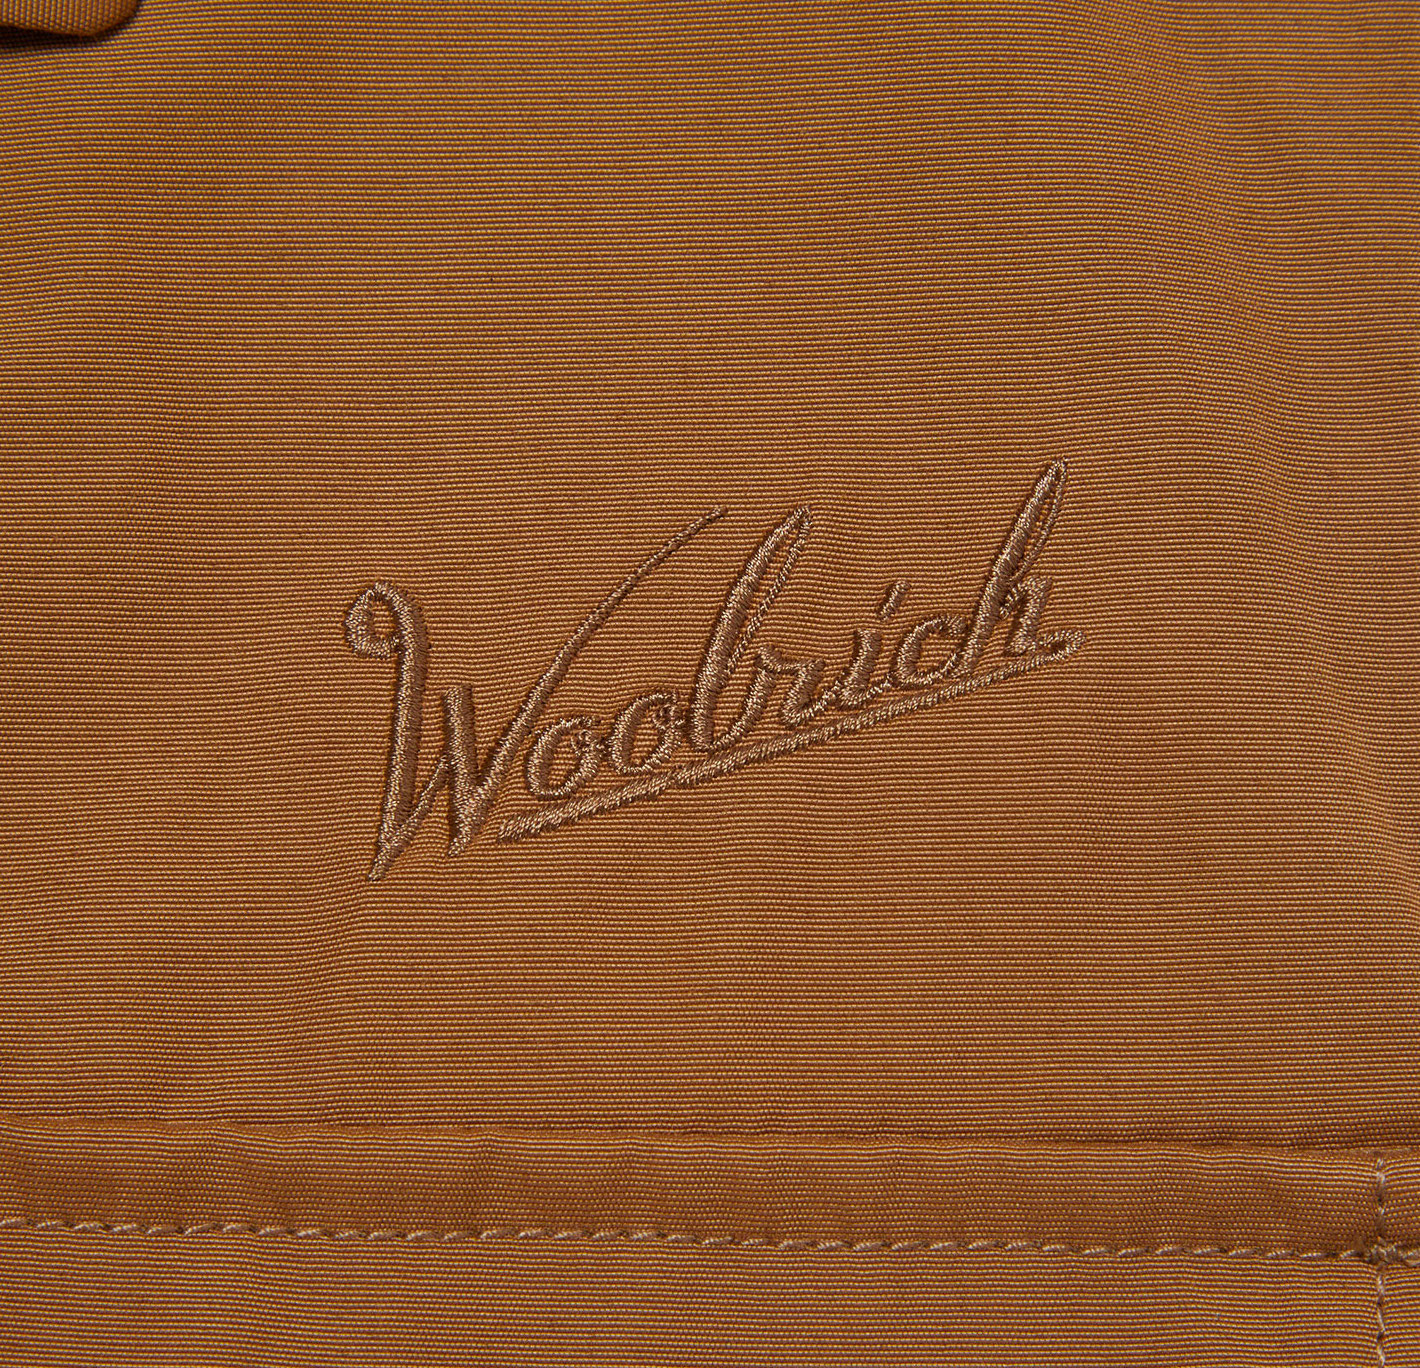 Woolrich classic beige fishing jacket